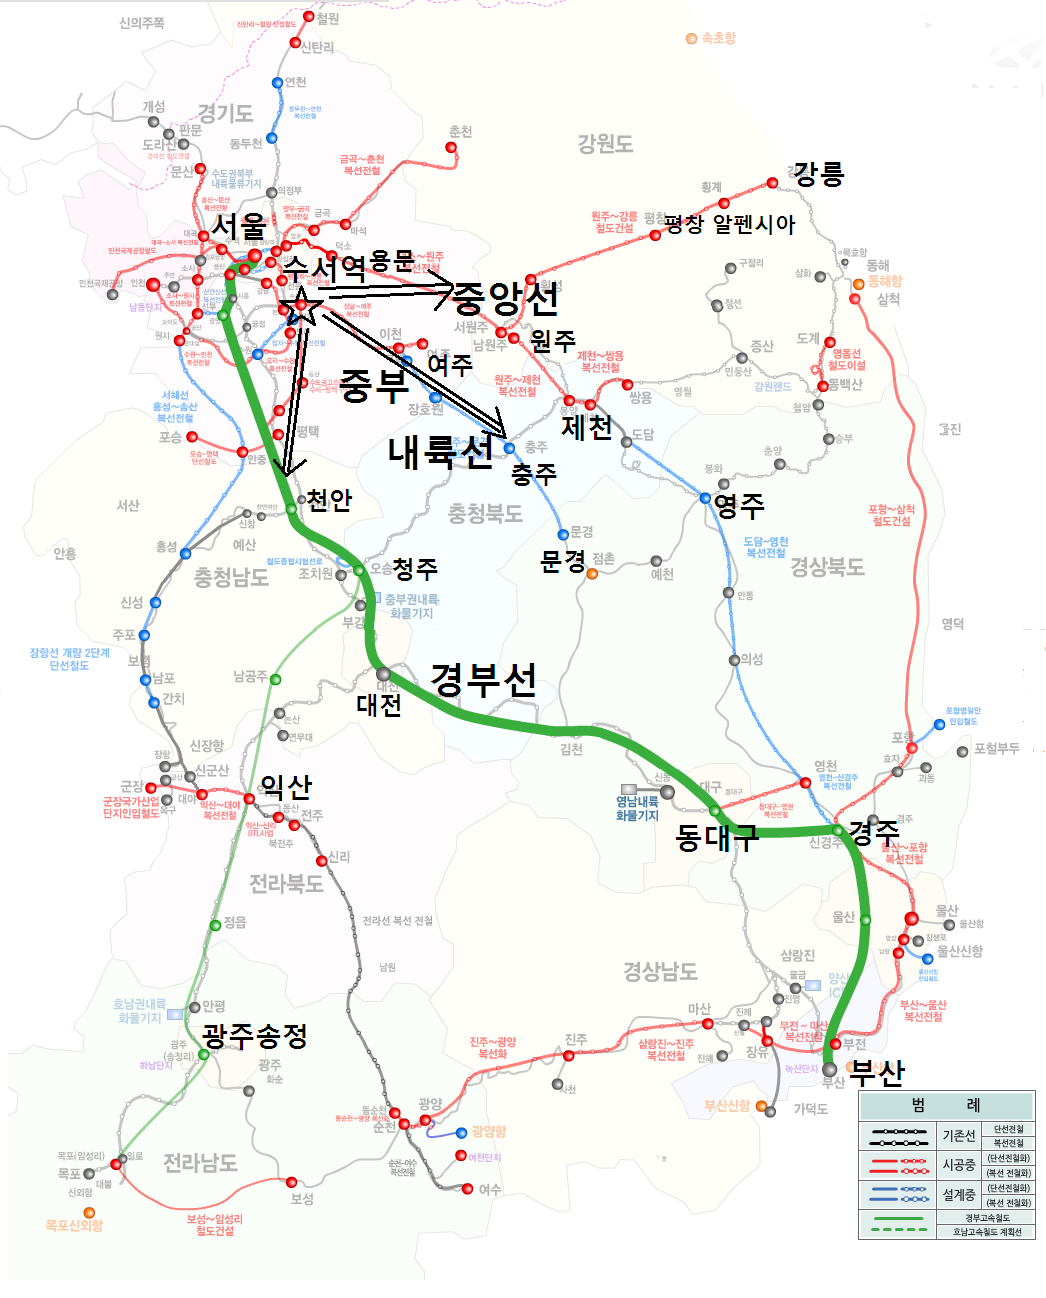 개량 및 신설 계획을 반영한 한국철도의 네트워크. 한국철도시설공단 홈페이지에서